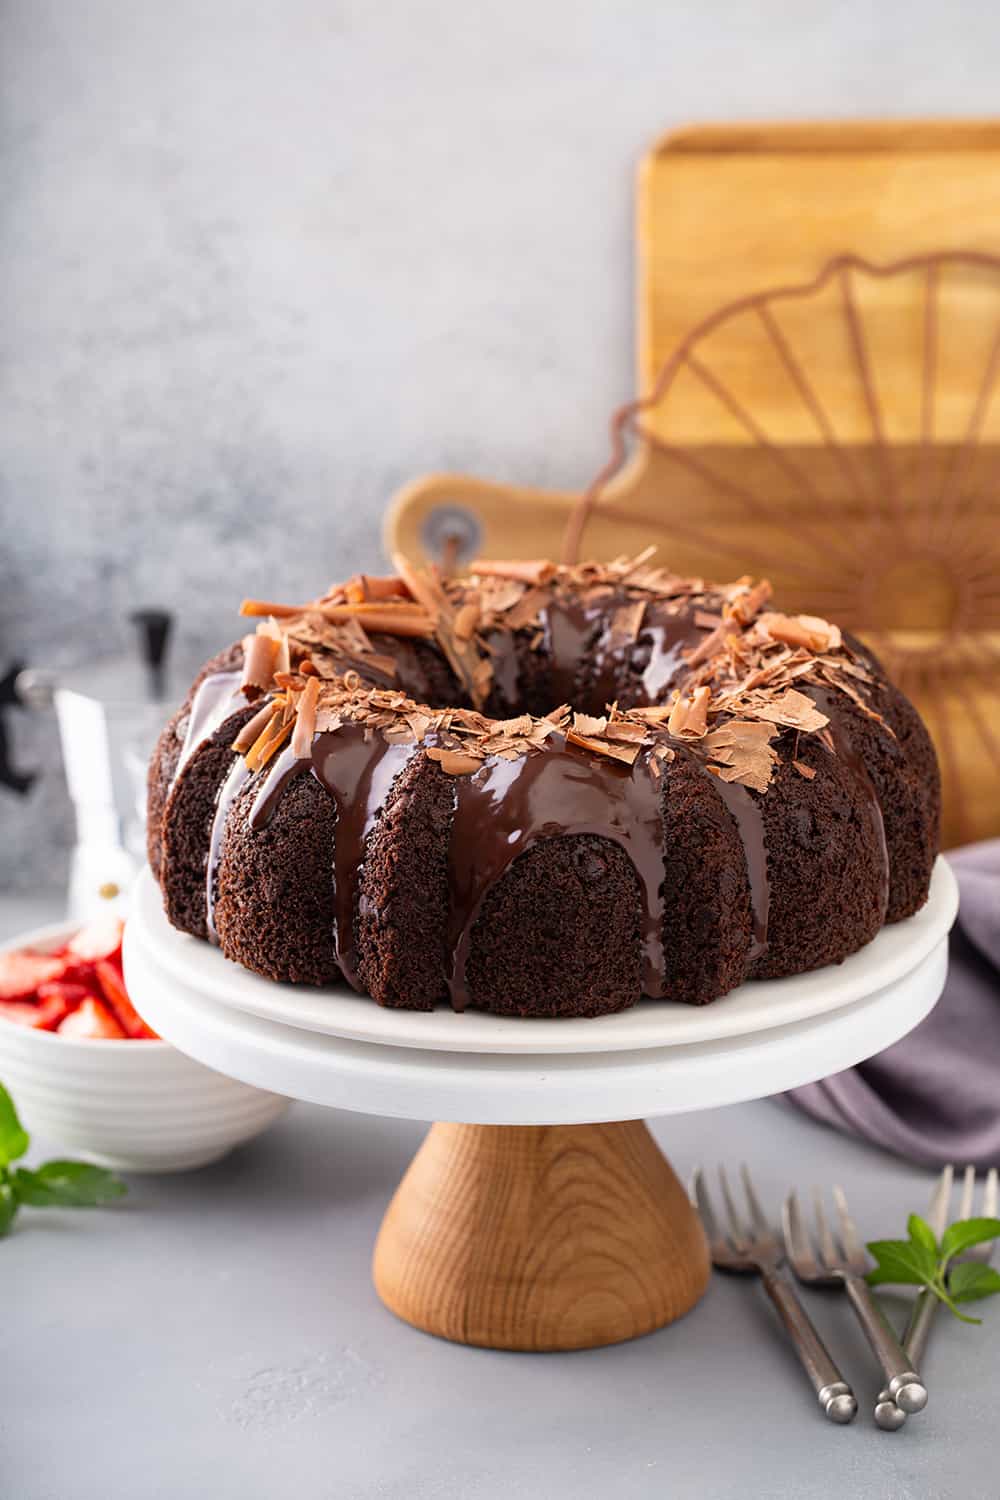 https://www.mybakingaddiction.com/wp-content/uploads/2021/09/easy-chocolate-bundt-cake.jpg